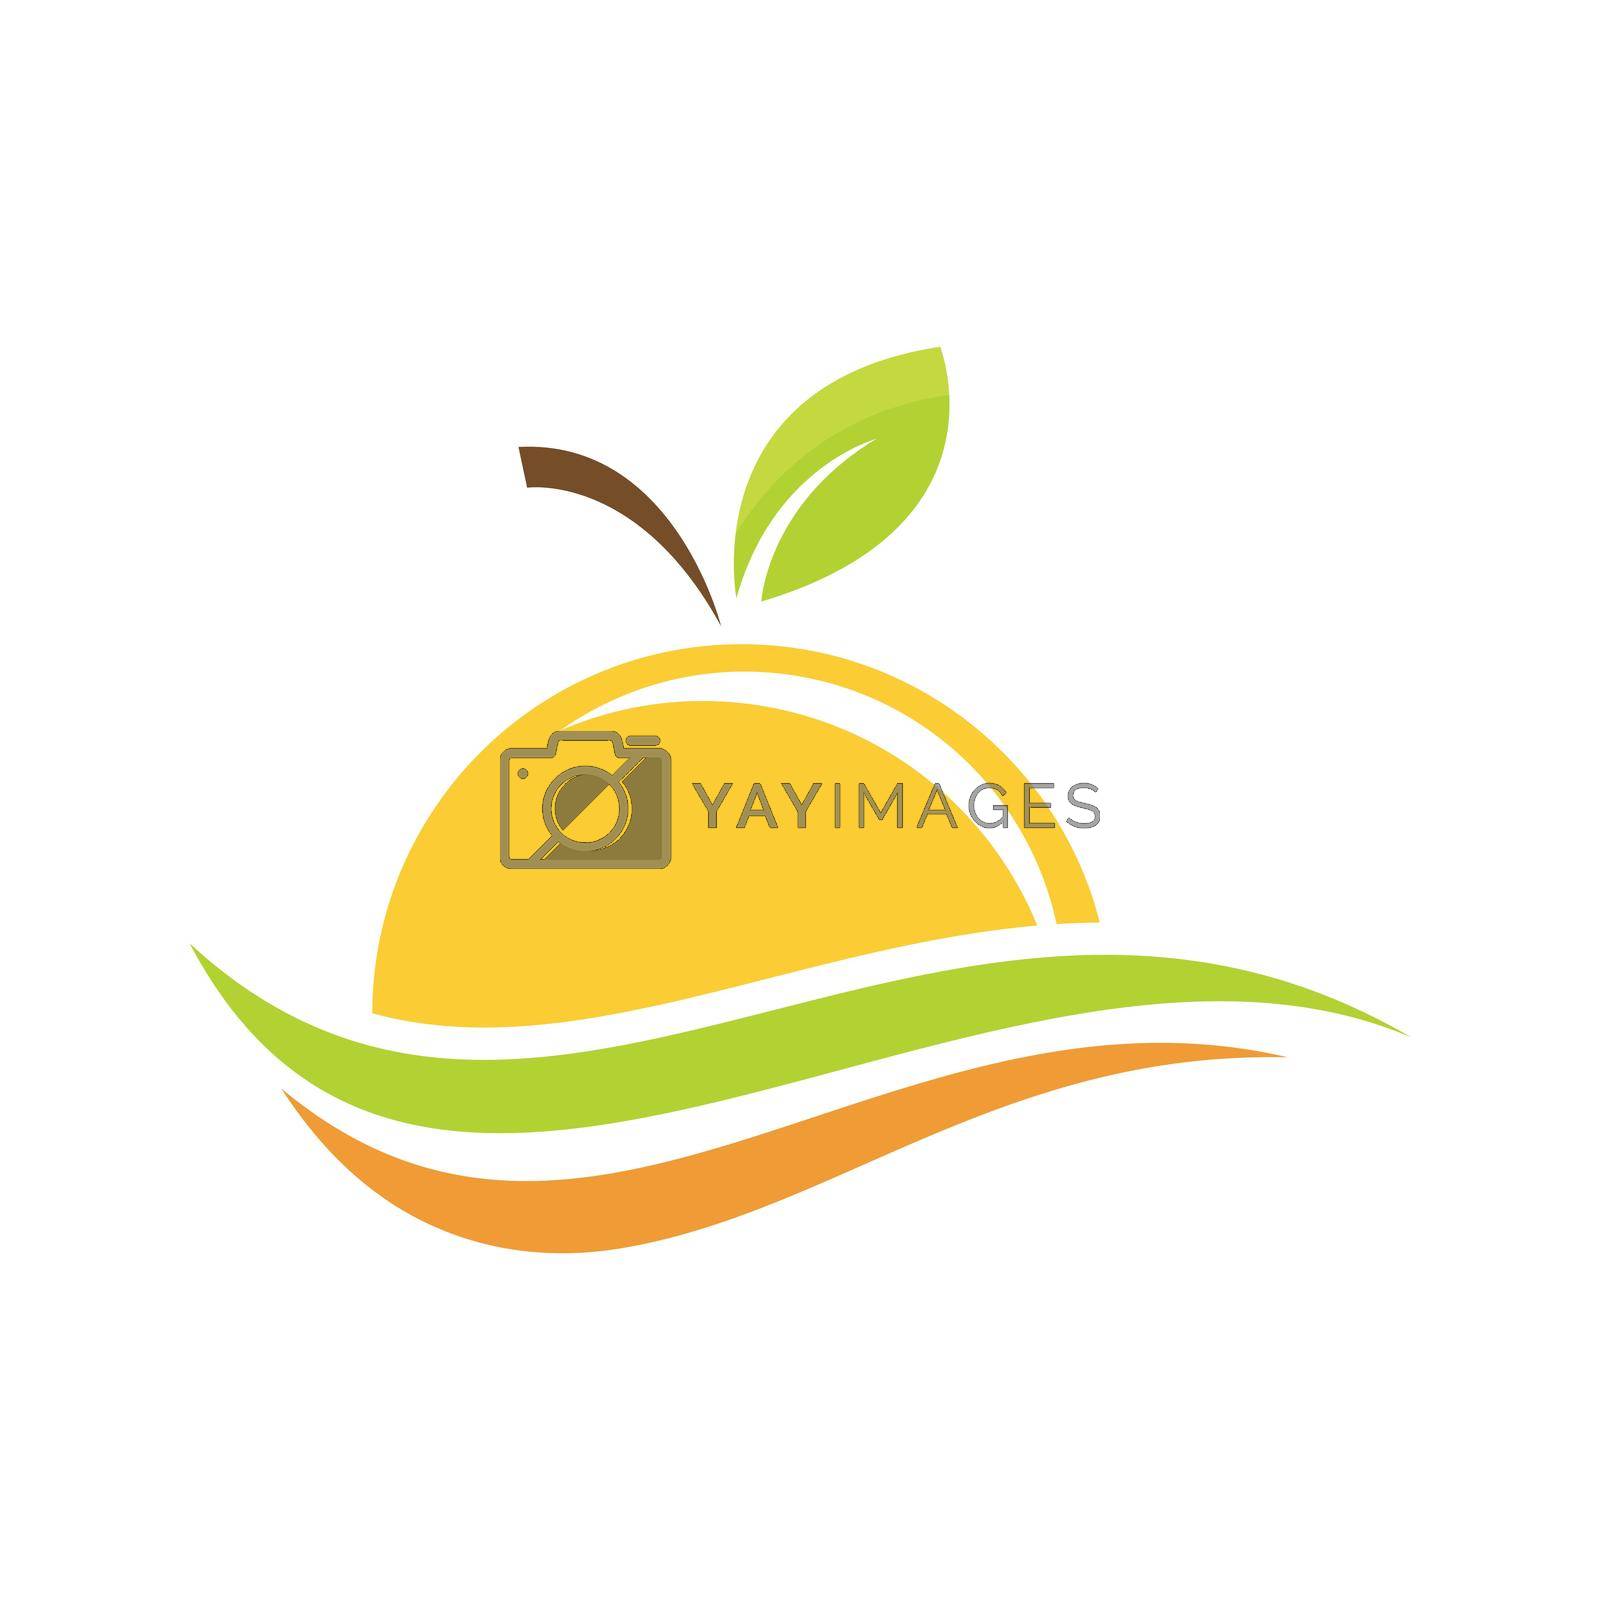 Royalty free image of Orange fruit logo by awk